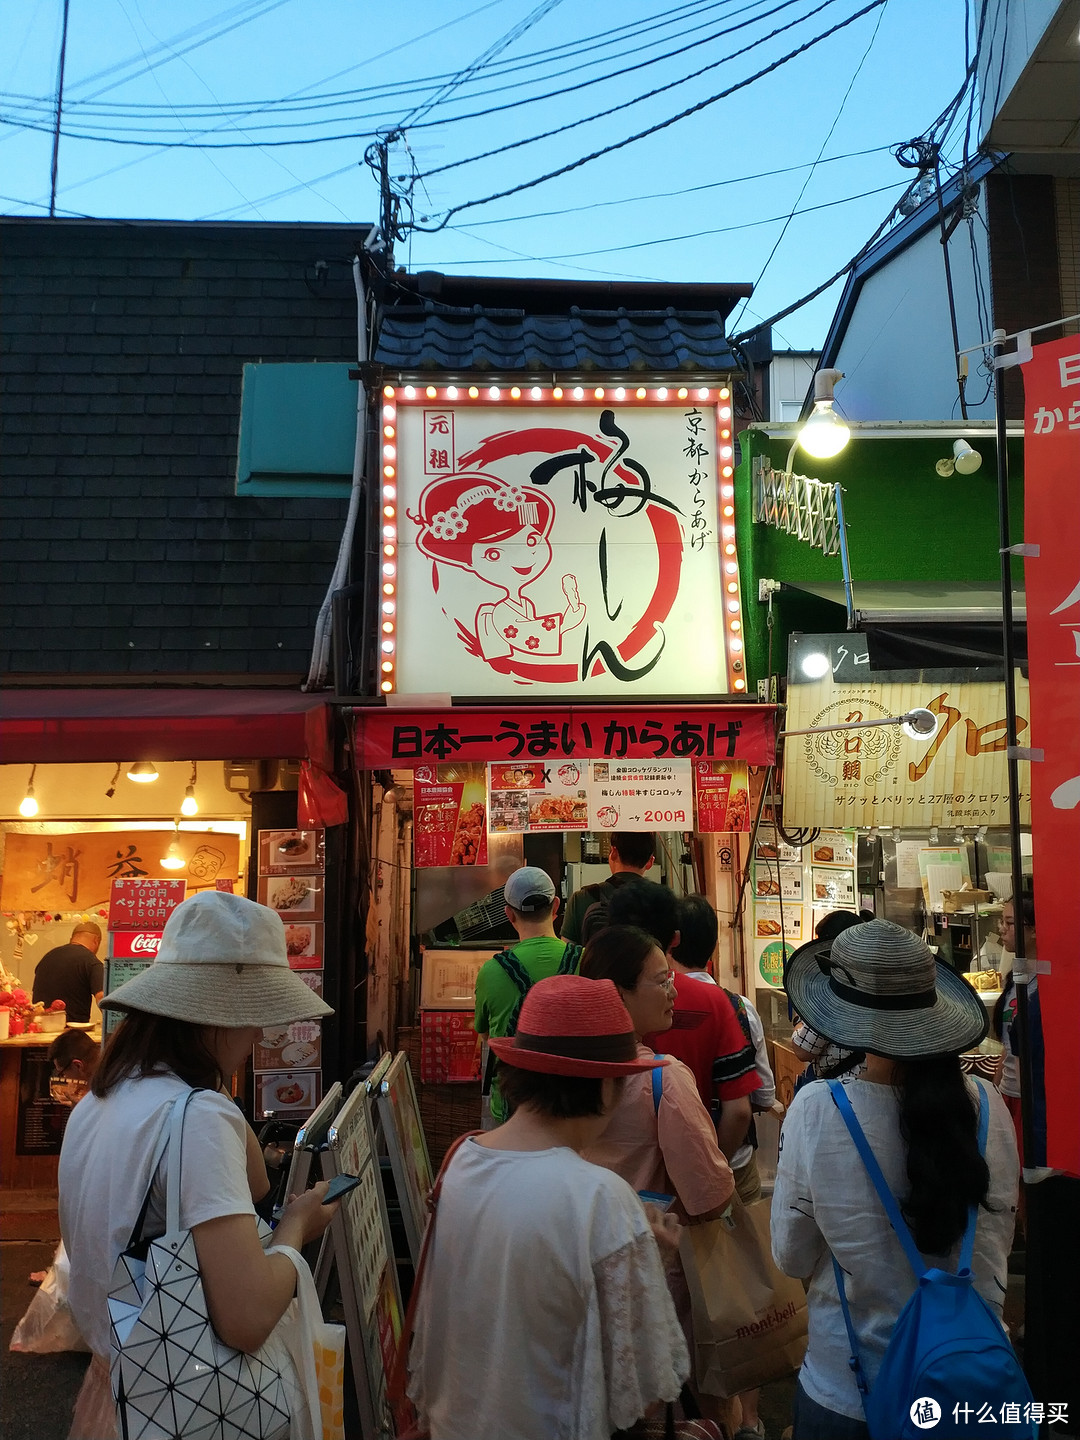  路过一家日本炸鸡协会7年连续金奖的炸鸡小店，挺多人排队的，没忍住，排个队试试。